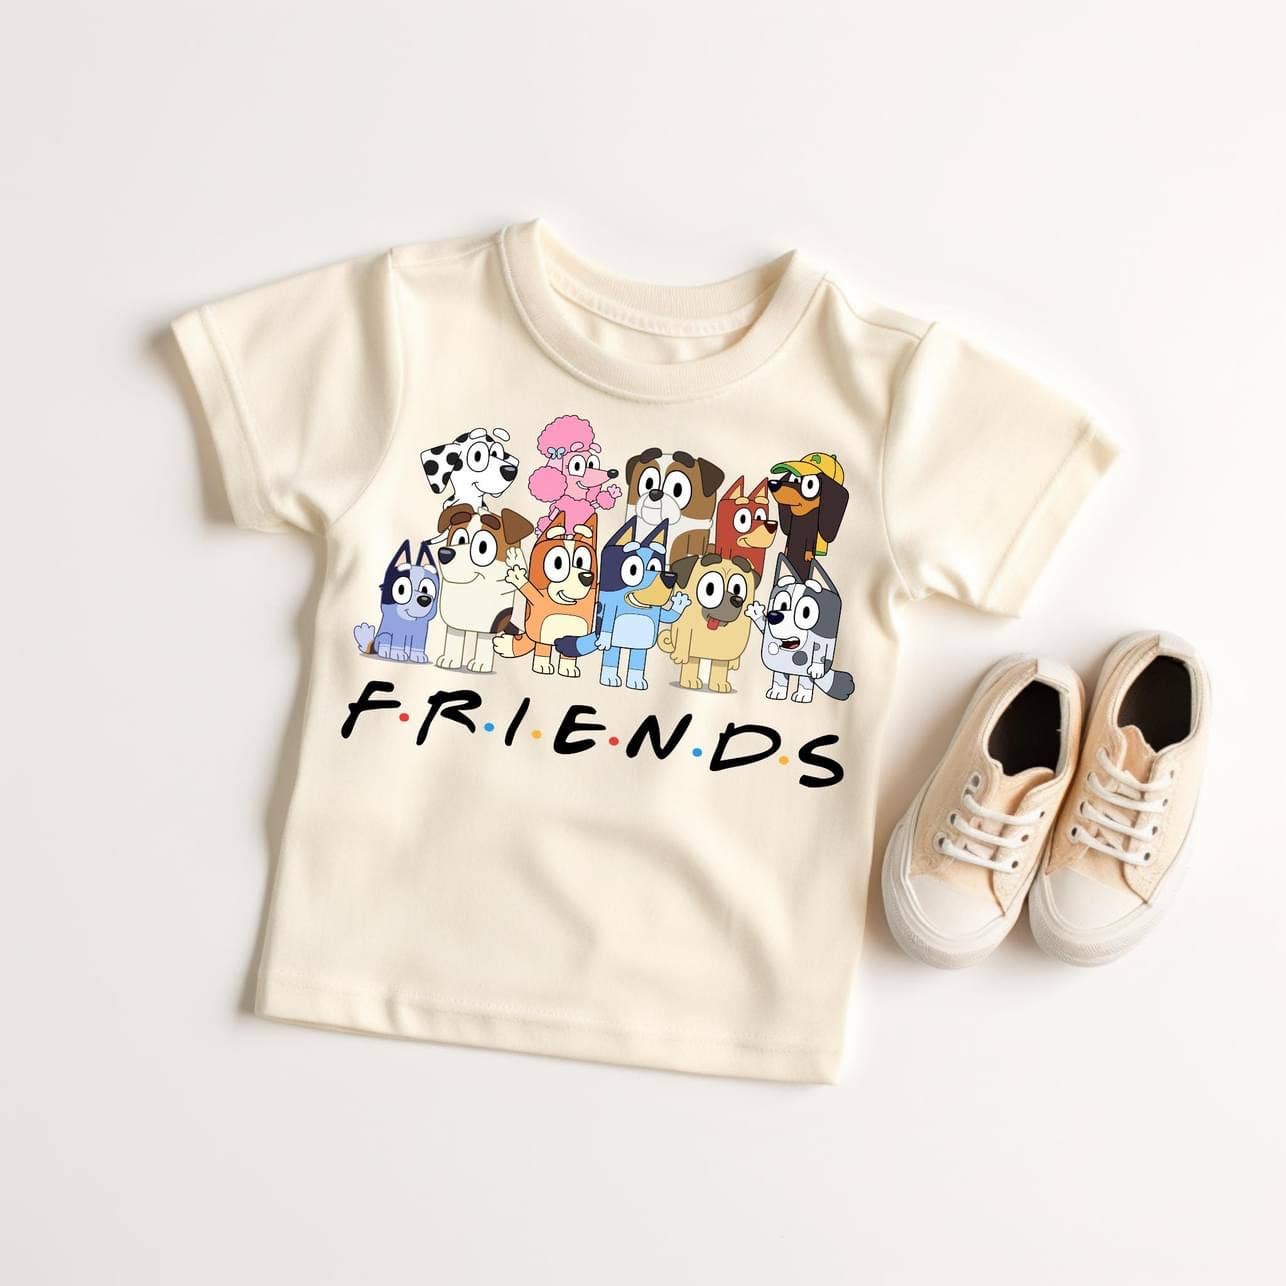 Blue Dog and Friends - Kids Shirt